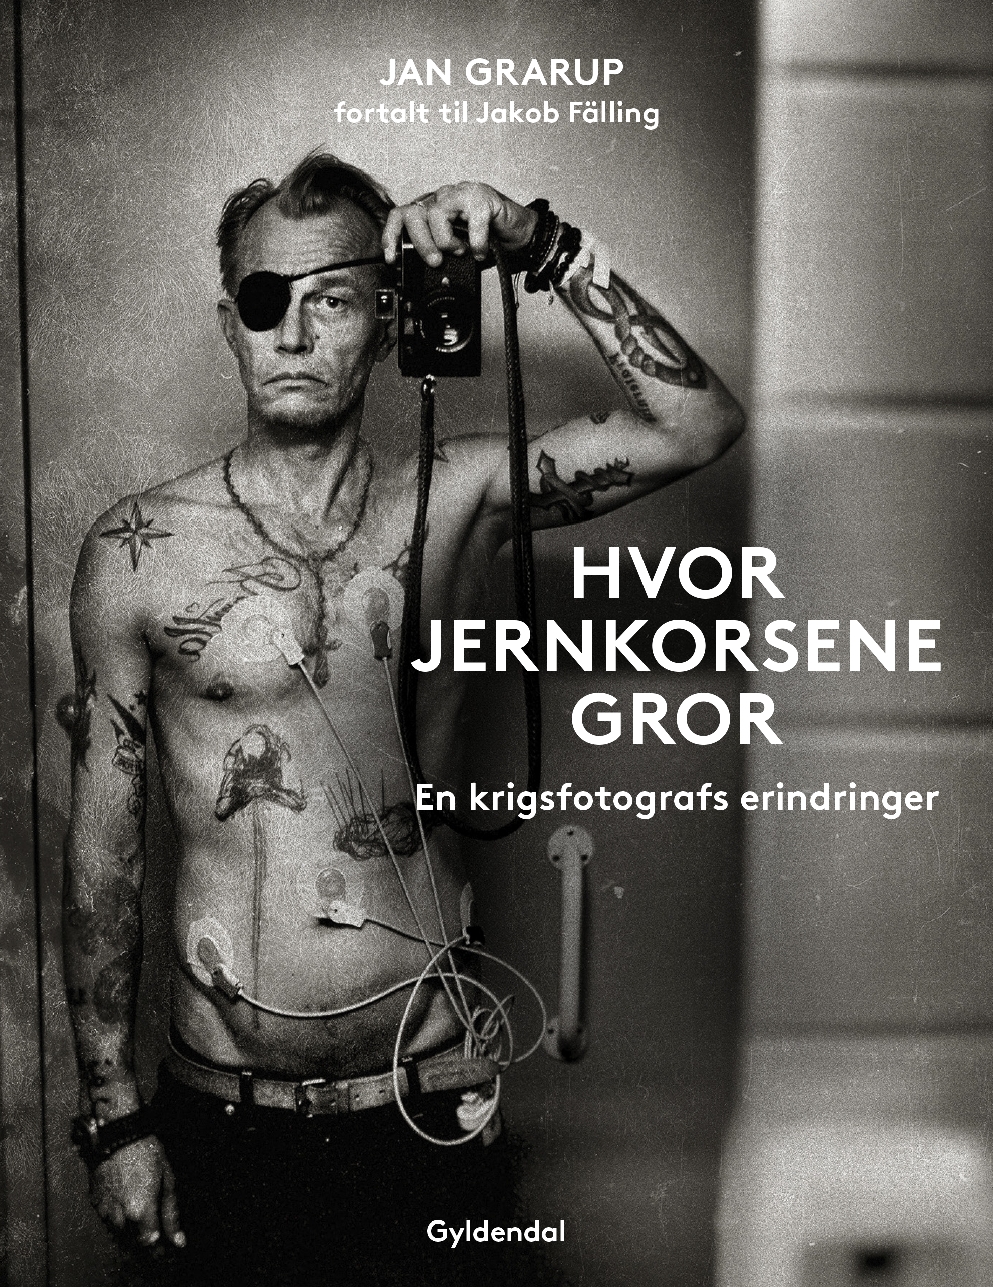 Jan Grarup - Krigsfotografen